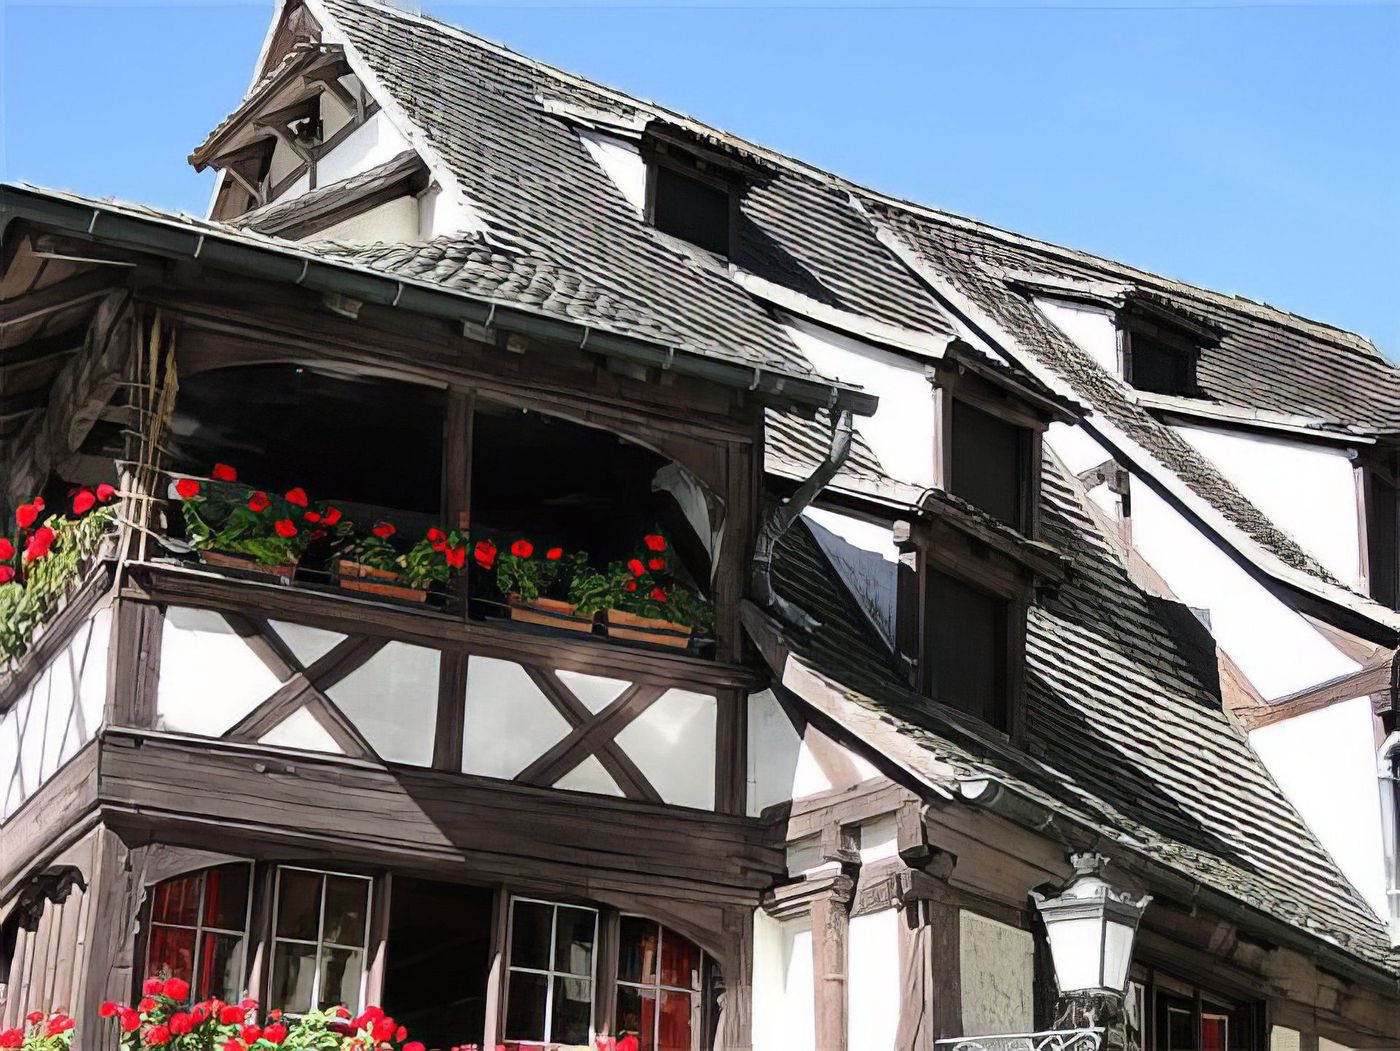 Maisons d'Alsace